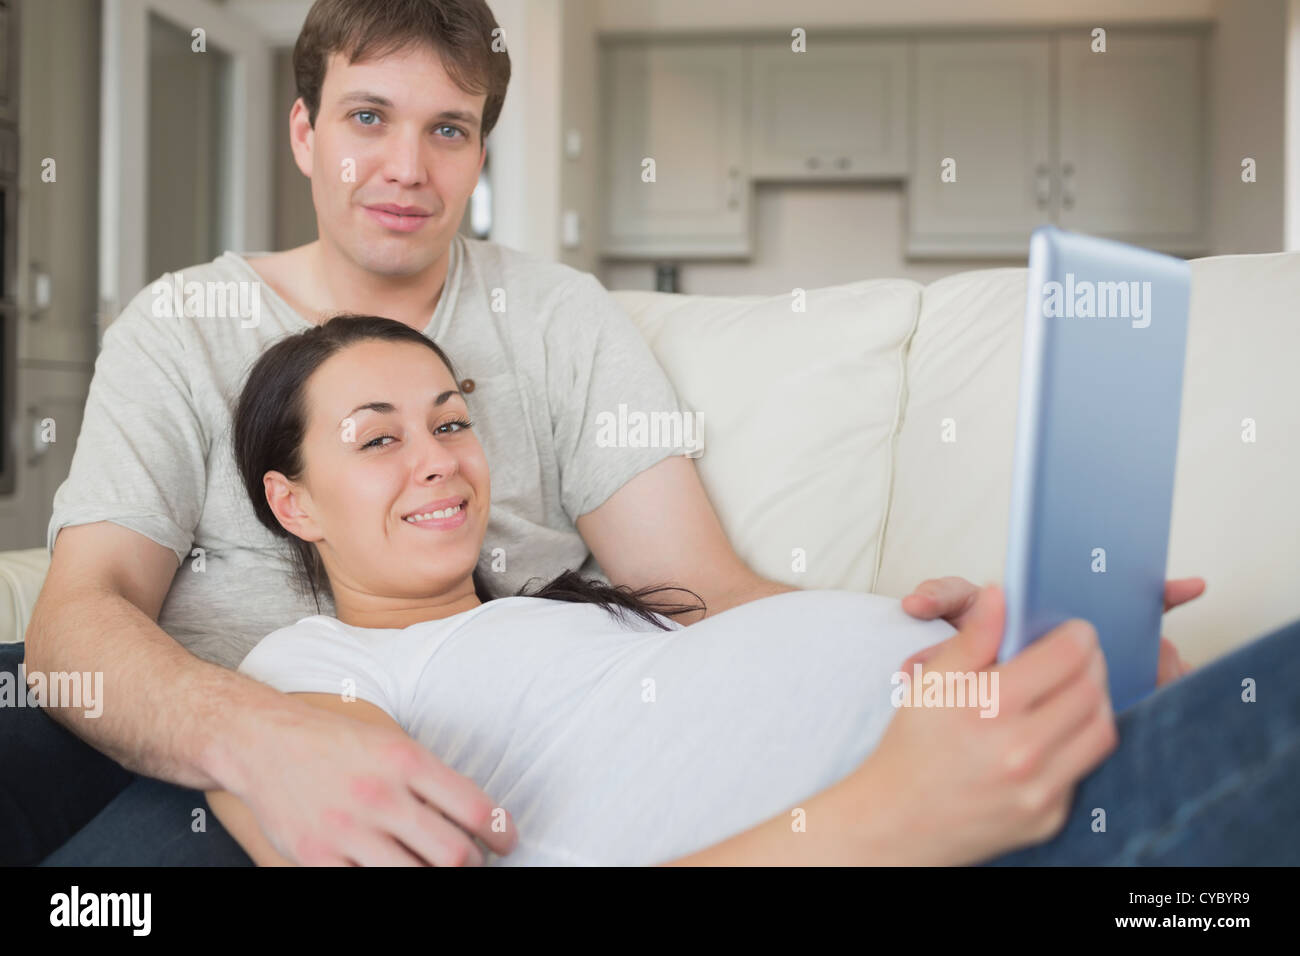 Los futuros padres utilizando el ebook y relajante Foto de stock